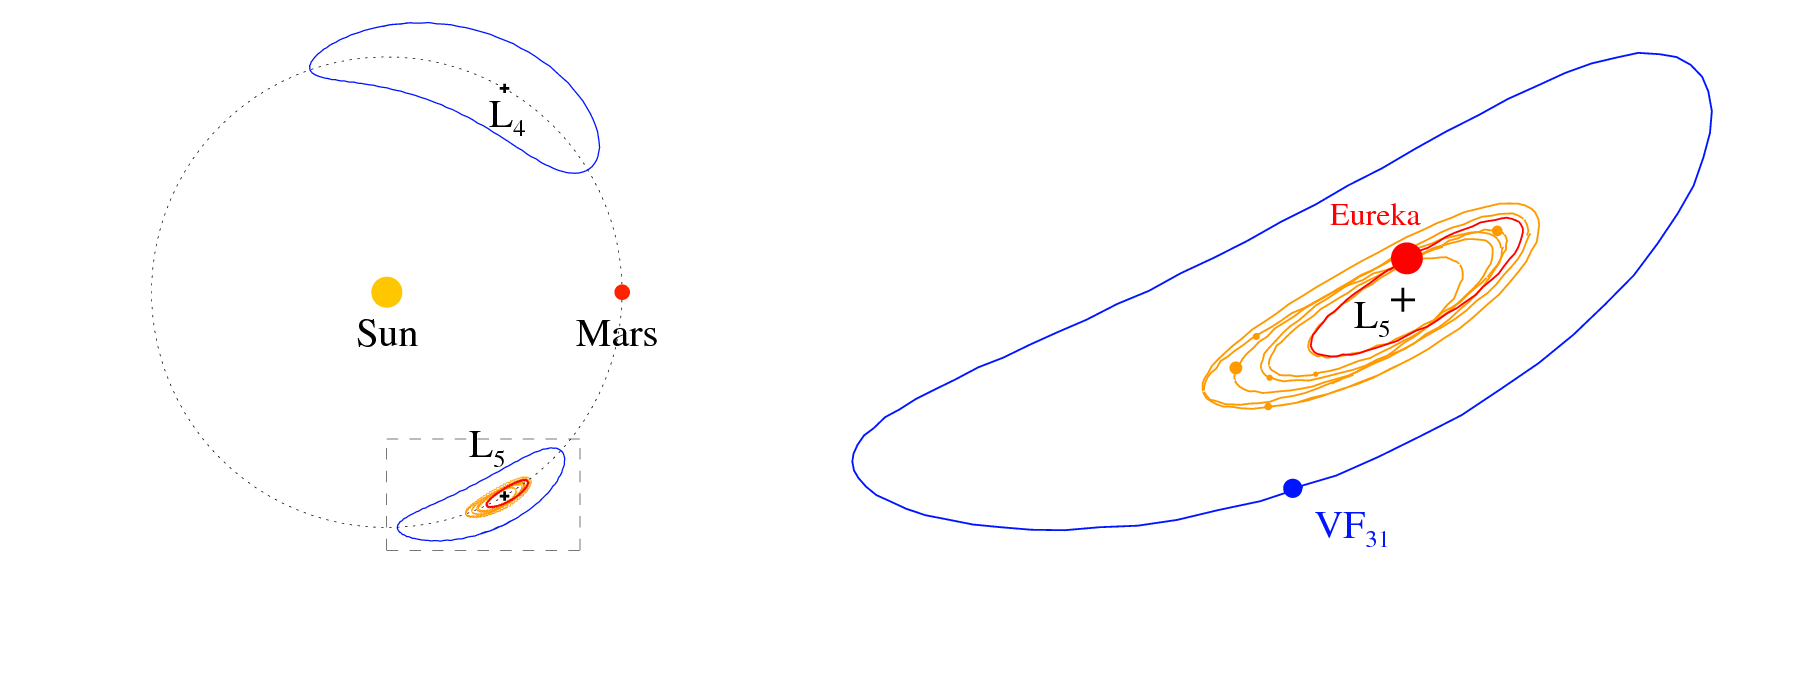 À esquerda, os percursos traçados pelos troianos de Marte em relação ao planeta e ao Sol. À direita, ampliação da inserção (retângulo) que mostra os percursos dos 8 troianos em L5: 1998 VF31 (a azul), Eureka (vermelho), e os 6 objetos identificados como membro da família.